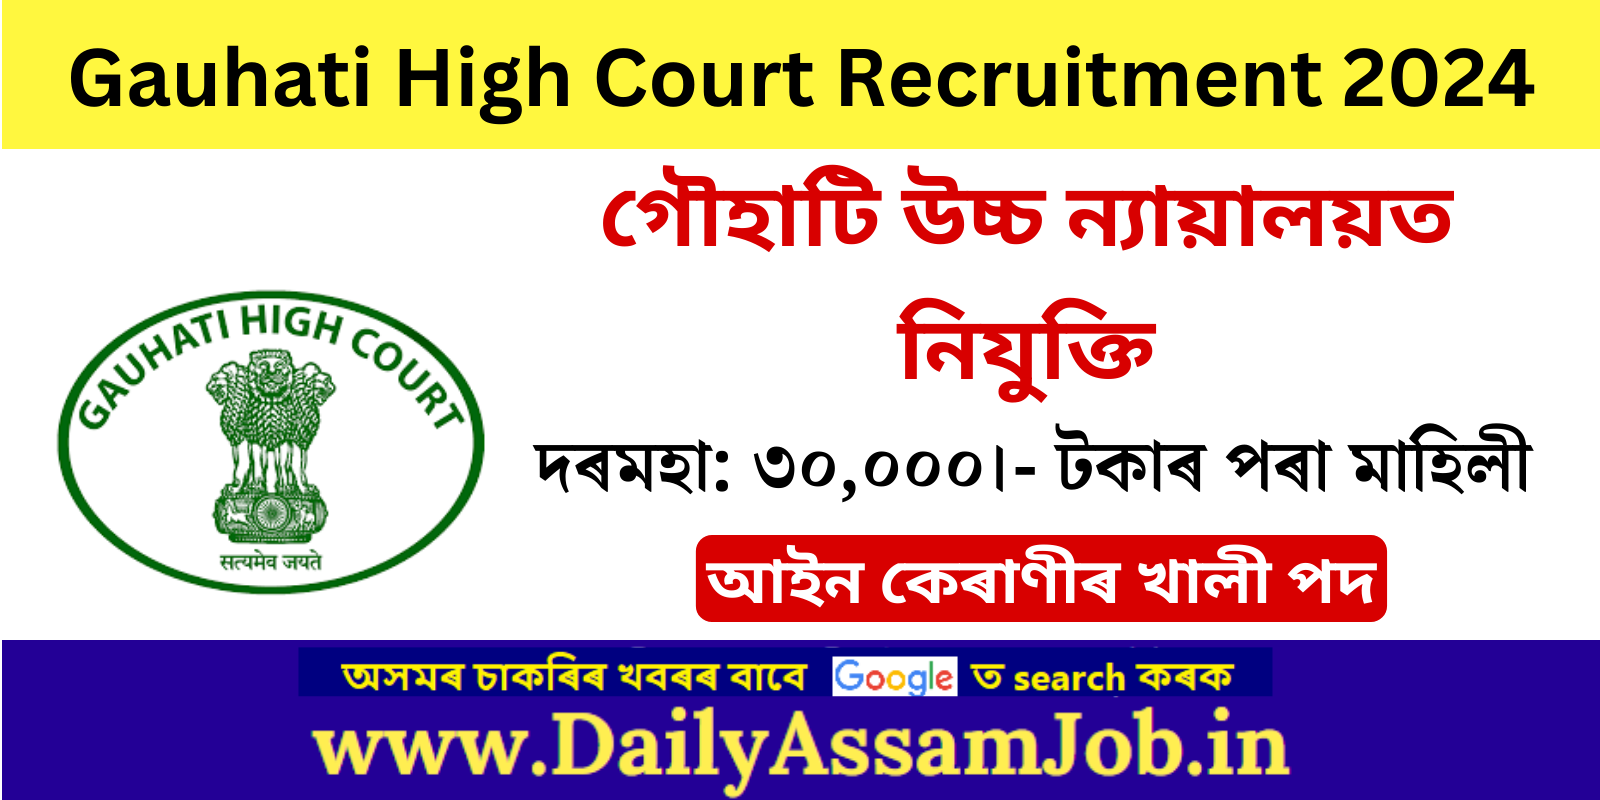 Gauhati High Court Recruitment 2024